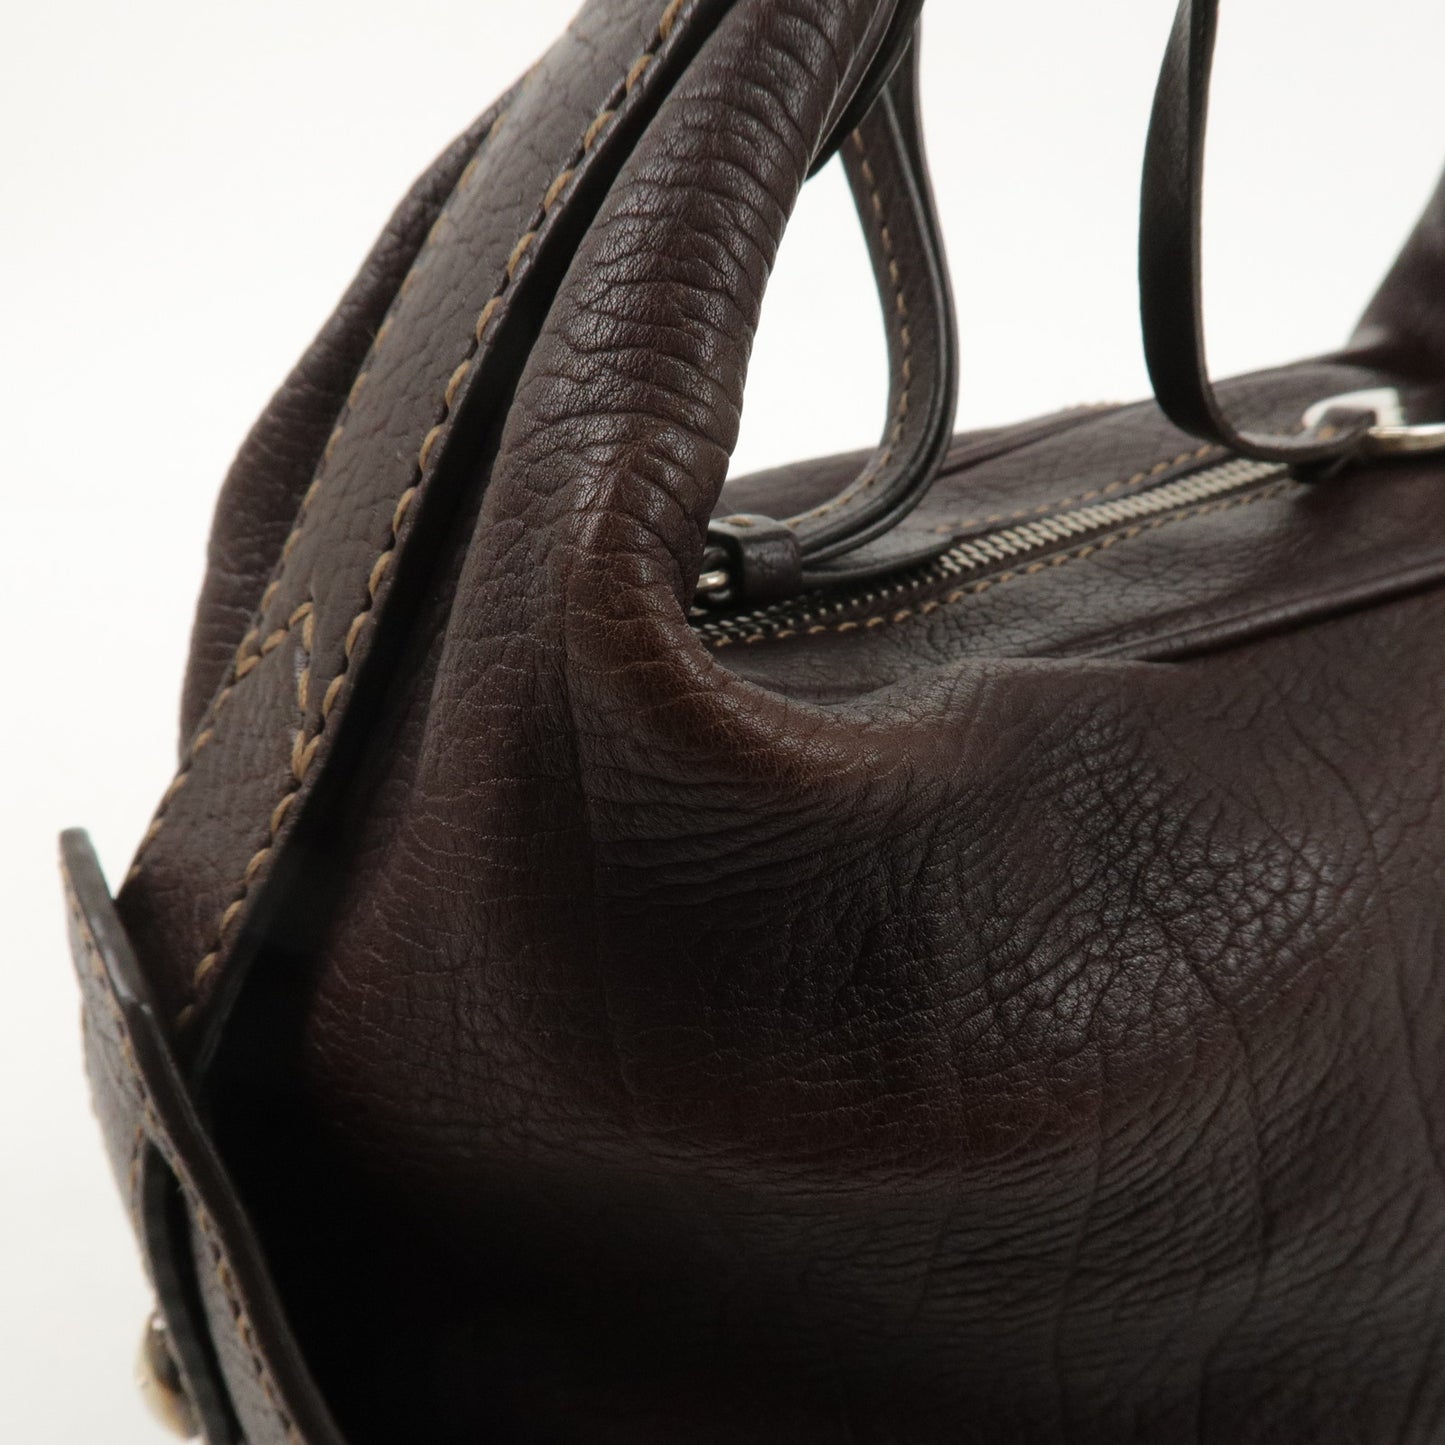 TOD’S Leather One-shoulder Bag Shoulder Bag Hand Bag Brown